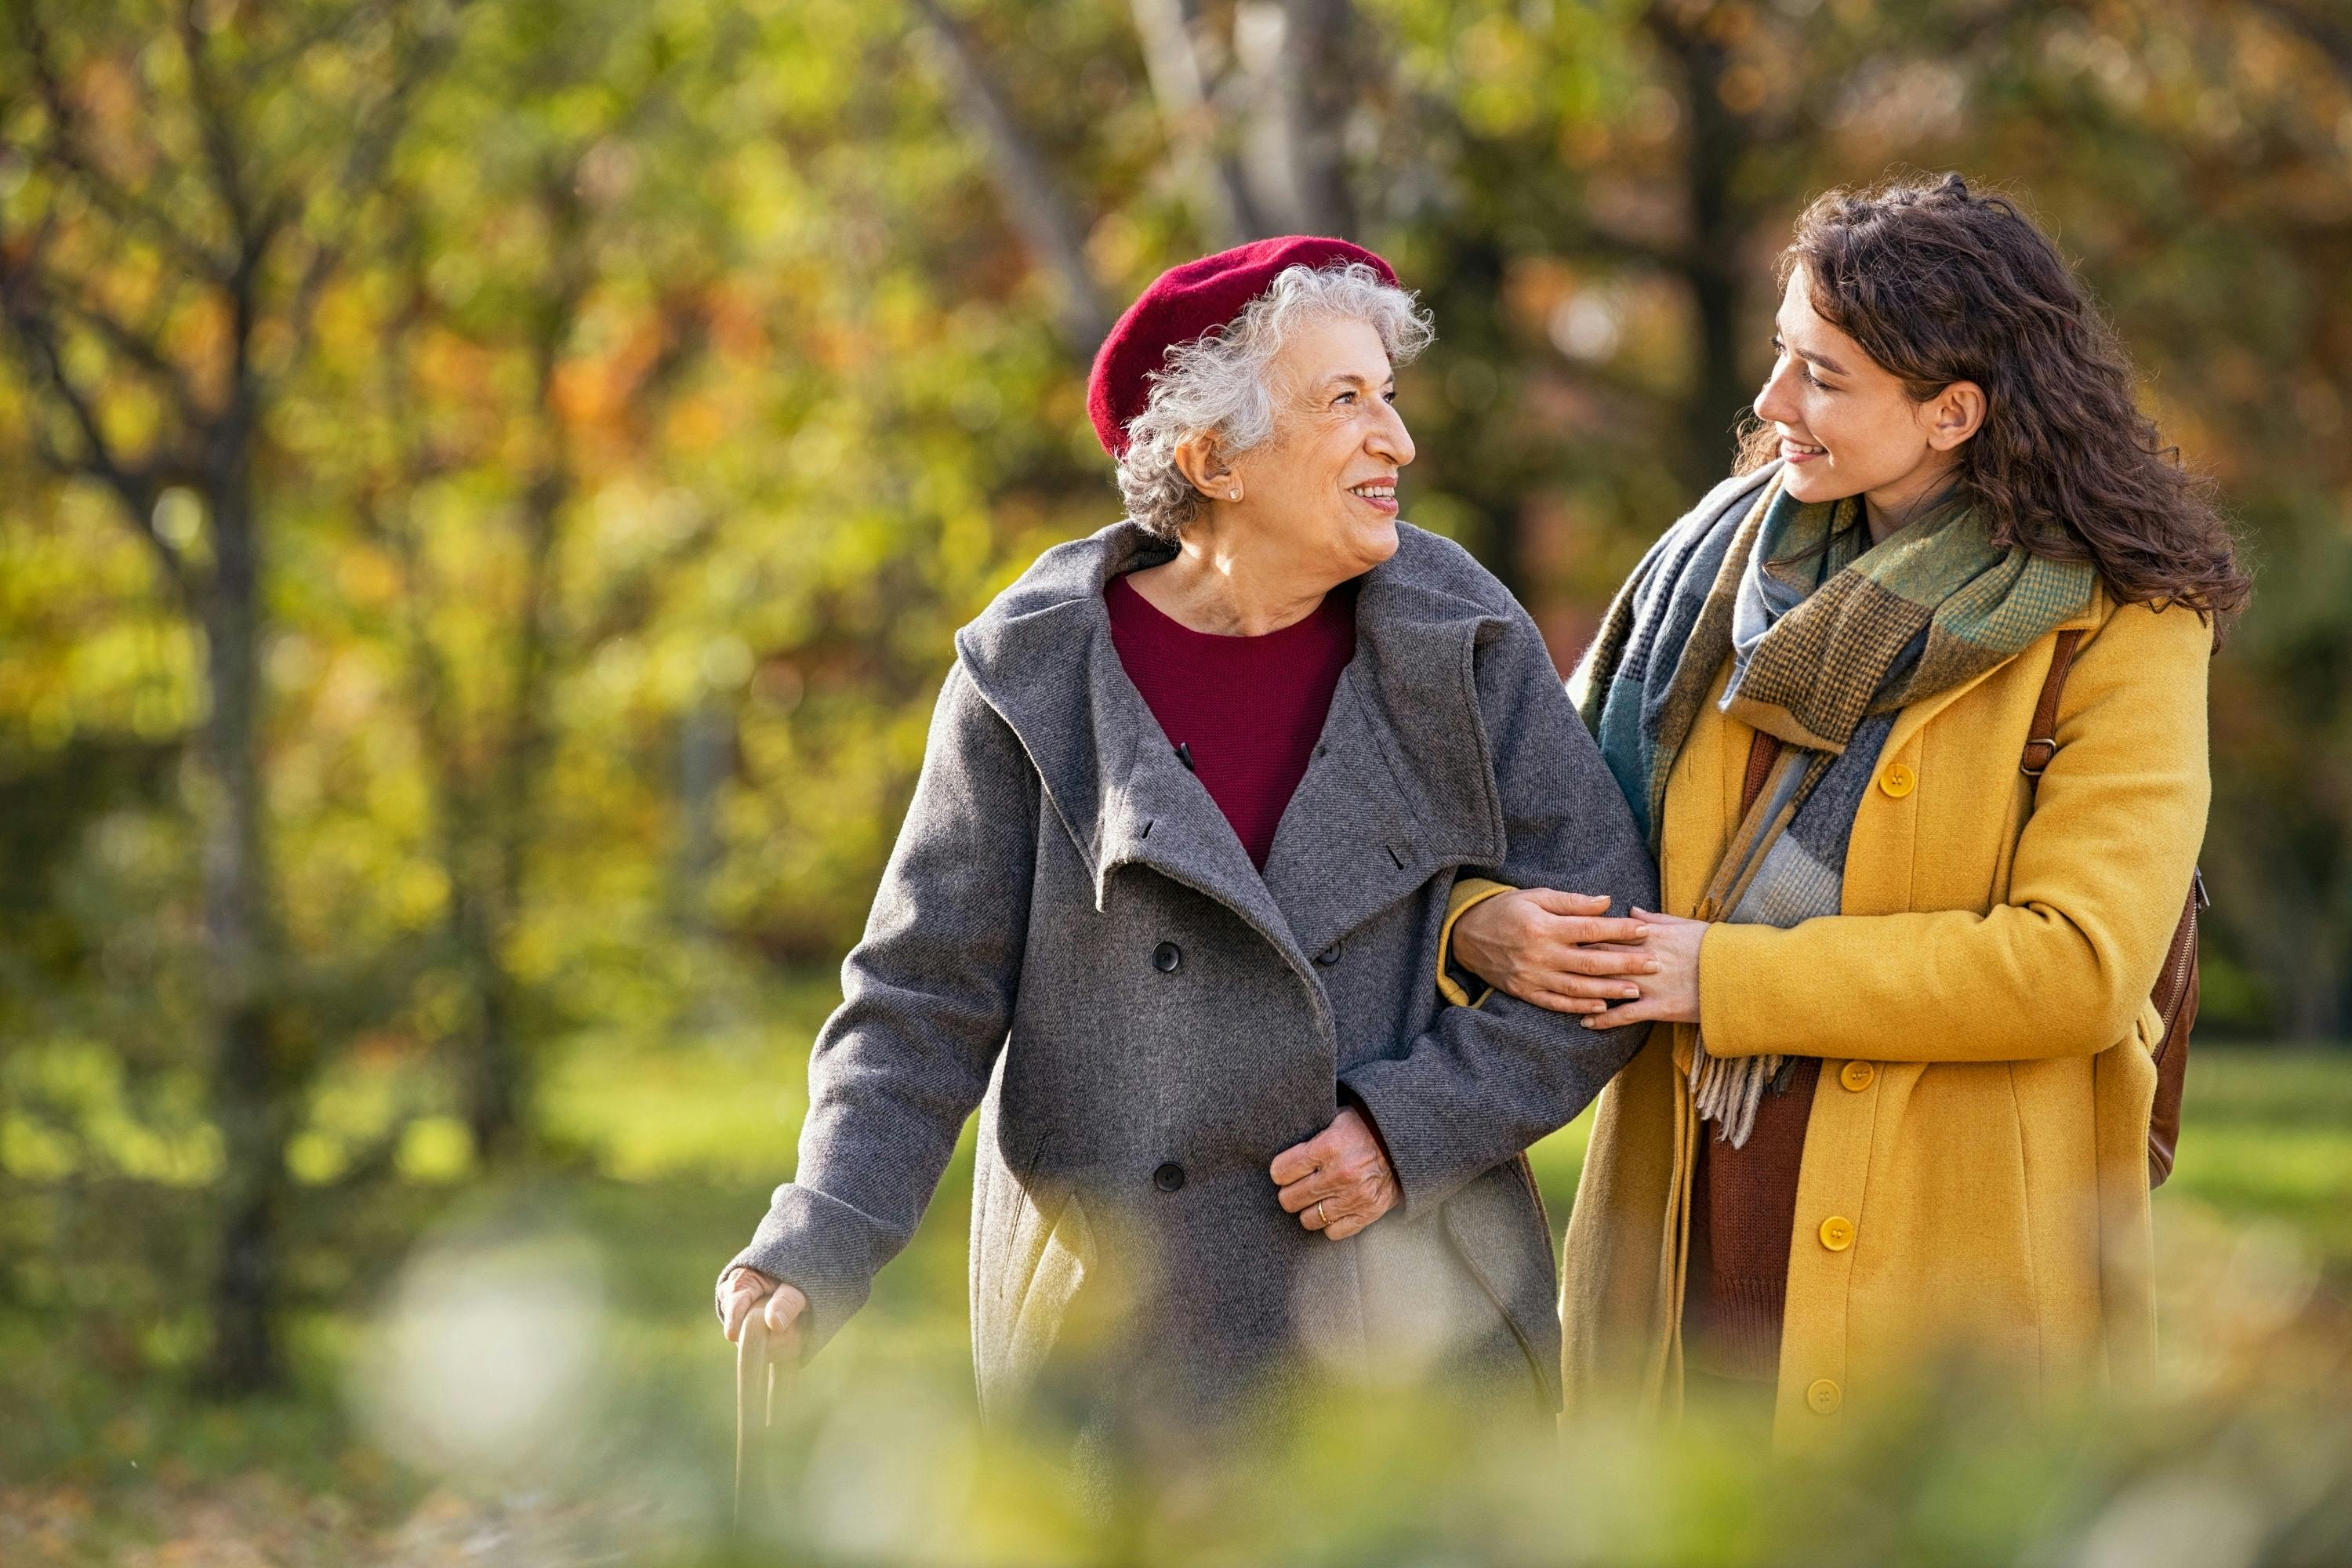 Alternde Frau mit Gehstock lächelt beim Spazieren mit jüngerer Begleiterin im Herbstpark.